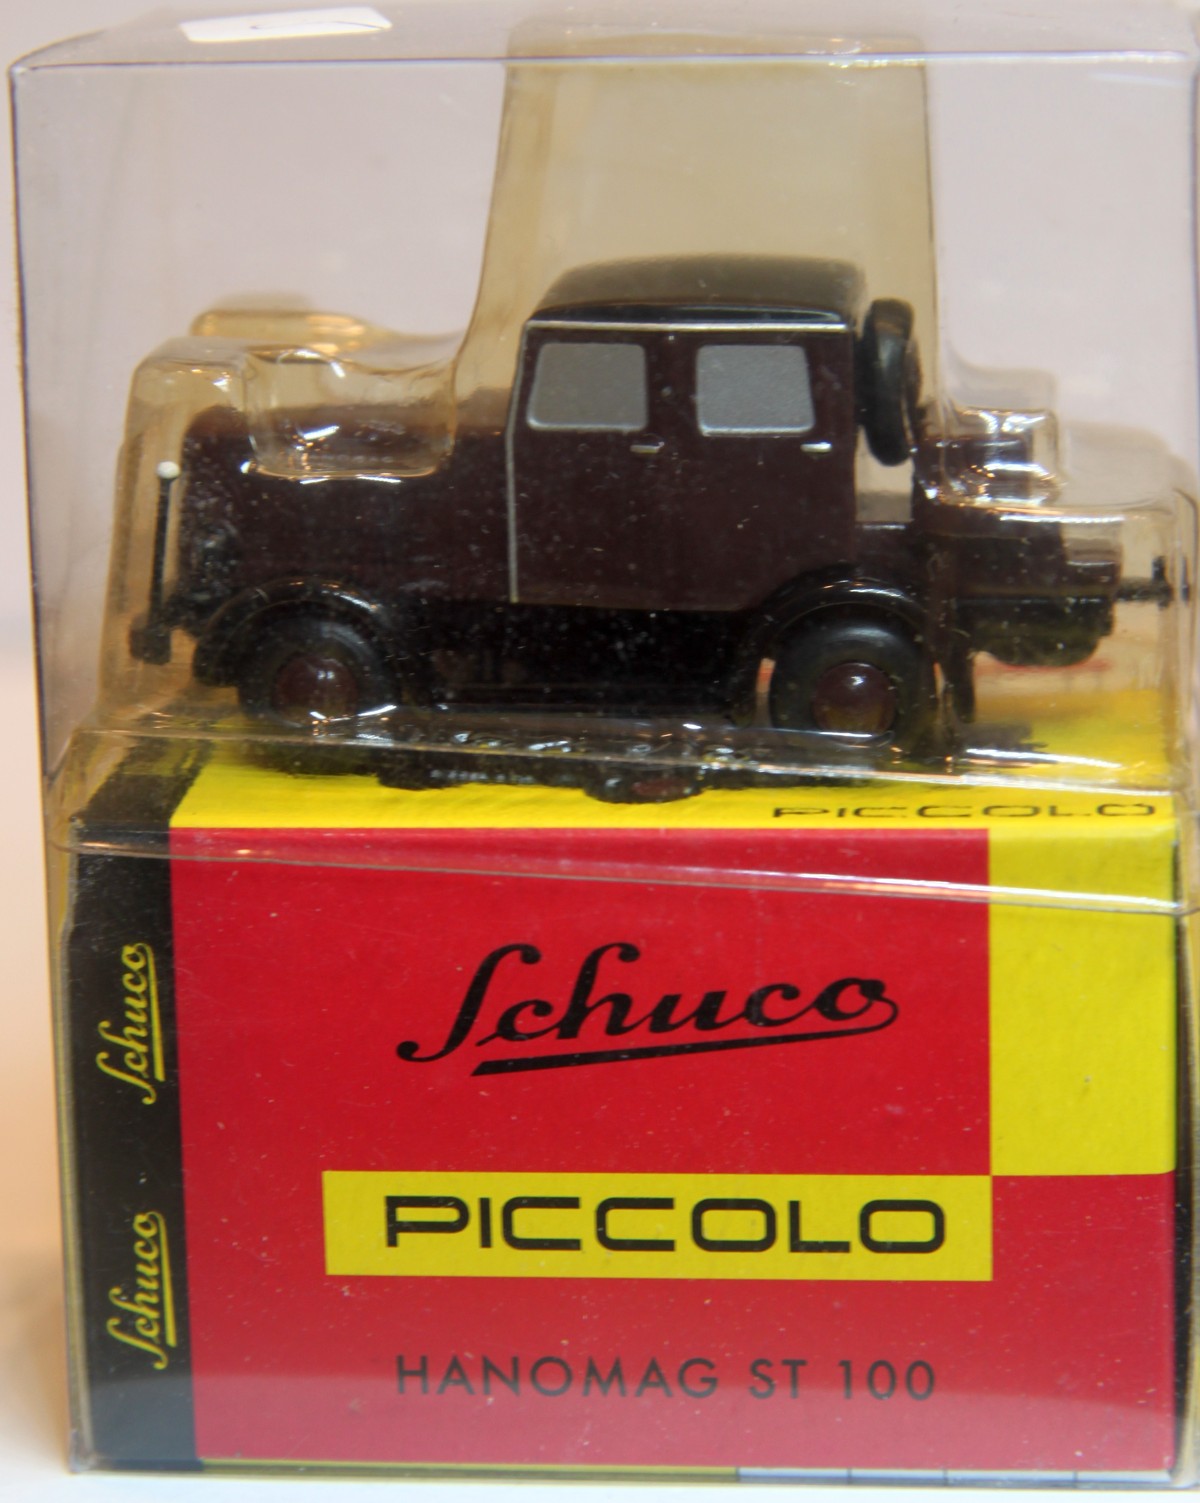 Schuco Piccolo 01612, Hanomag ST 100, Vollmetall, in OVP